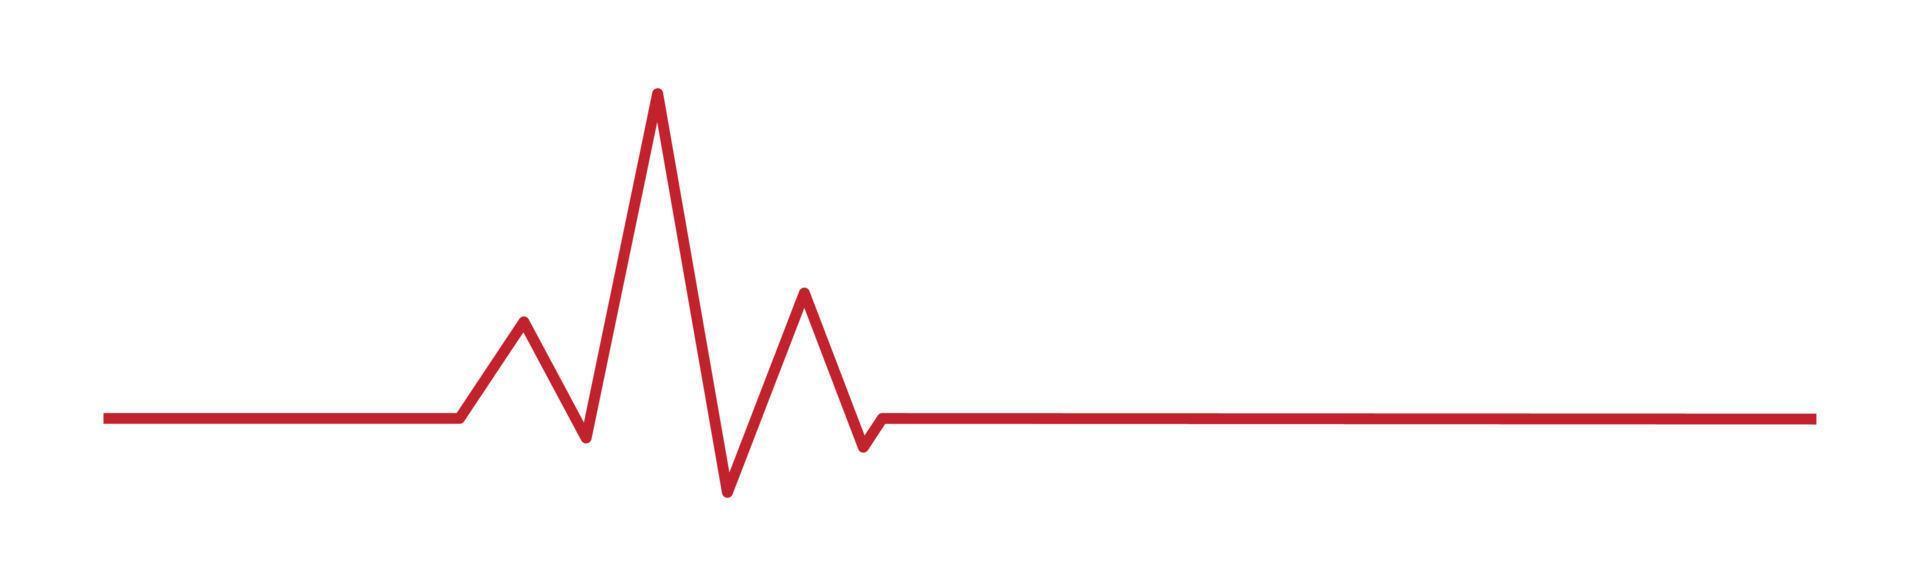 battito cardiaco - linea rossa curva su sfondo bianco - vettore